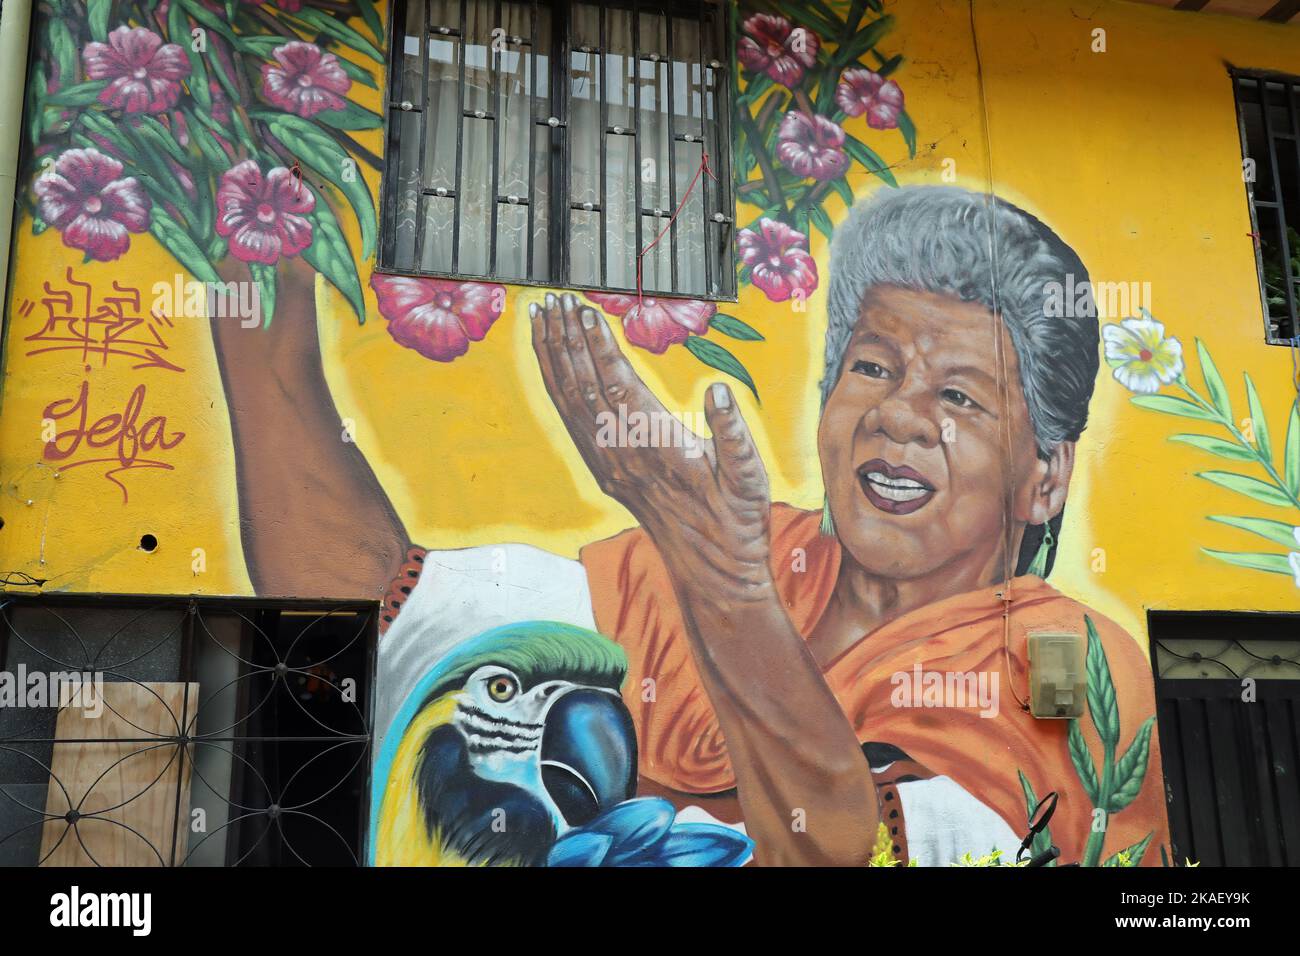 Arte callejero en el barrio Moravia de Medellín en Colombia Foto de stock